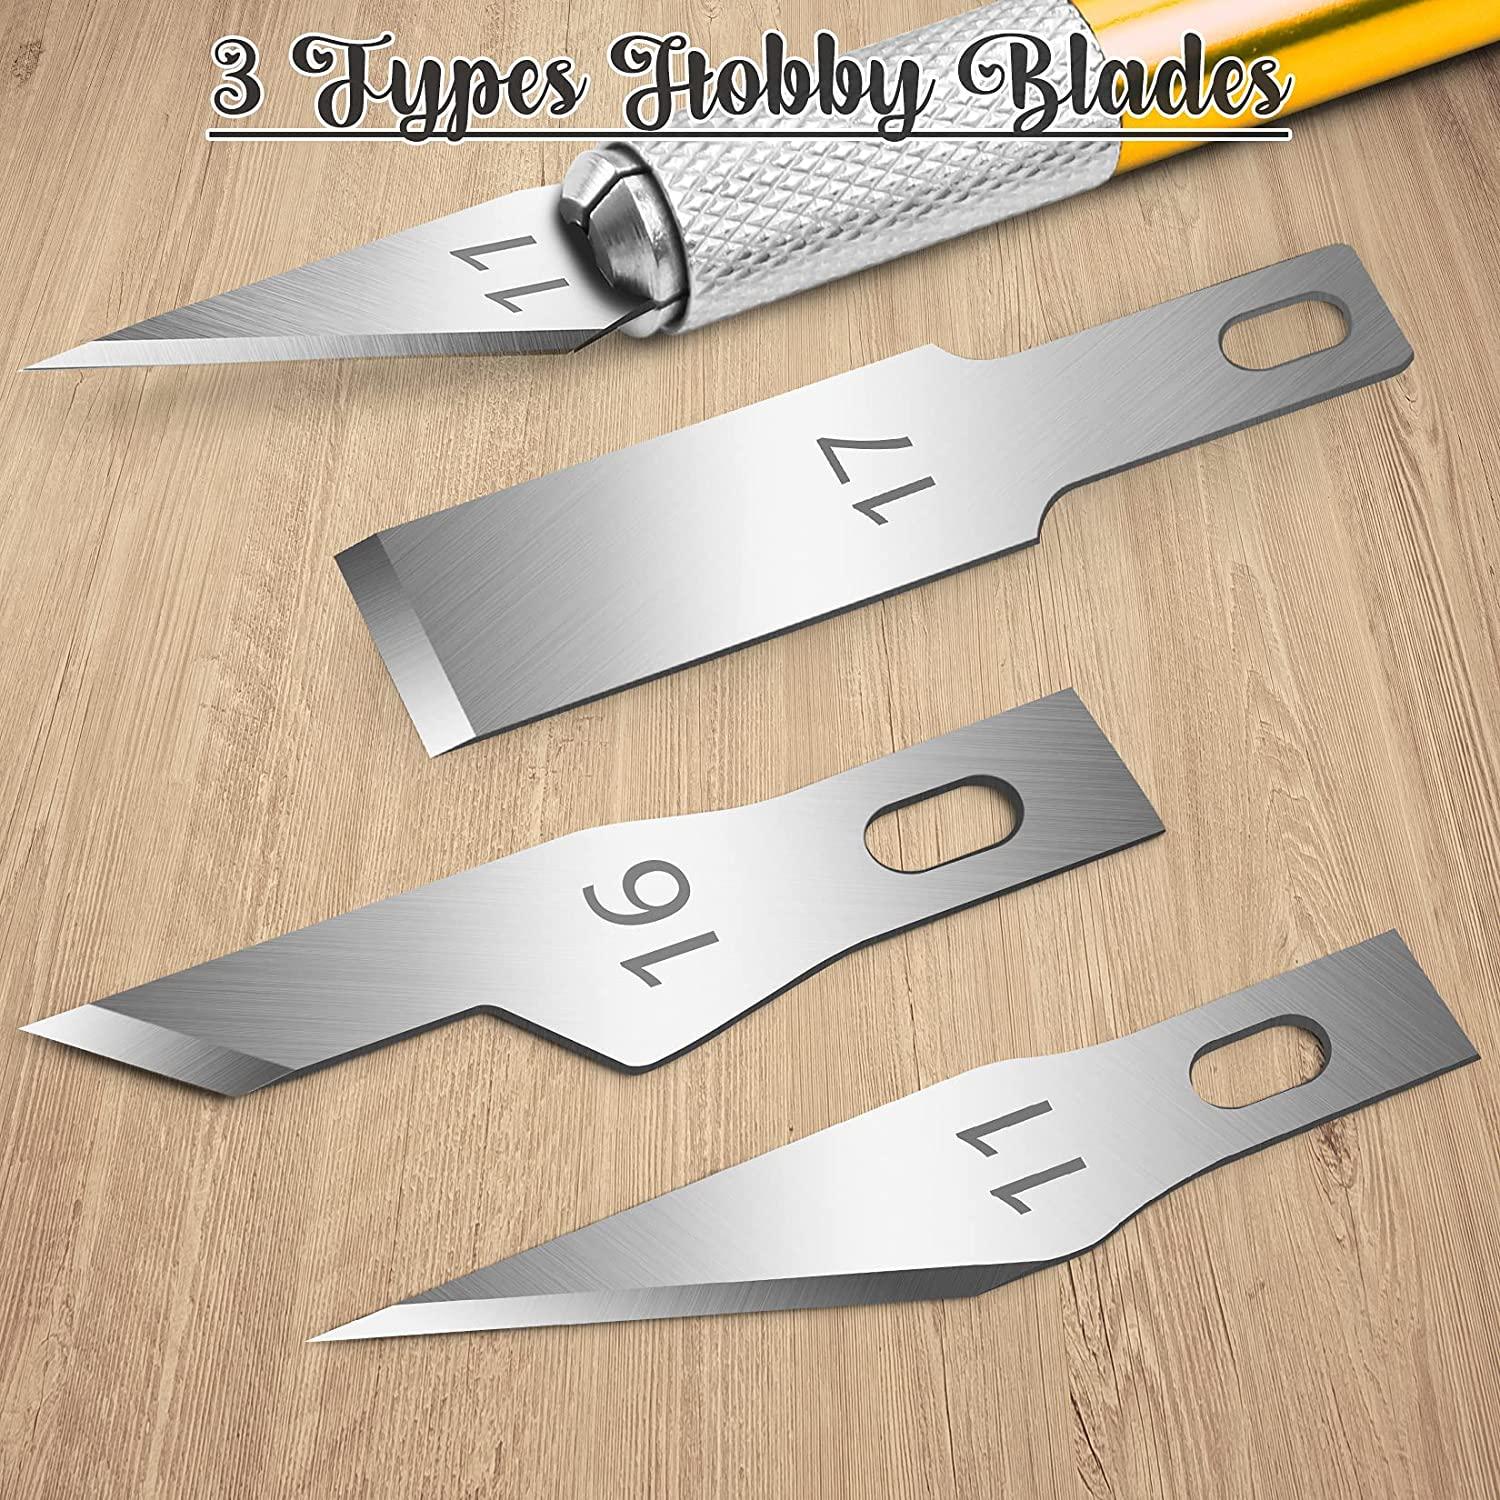 Hobby Knife